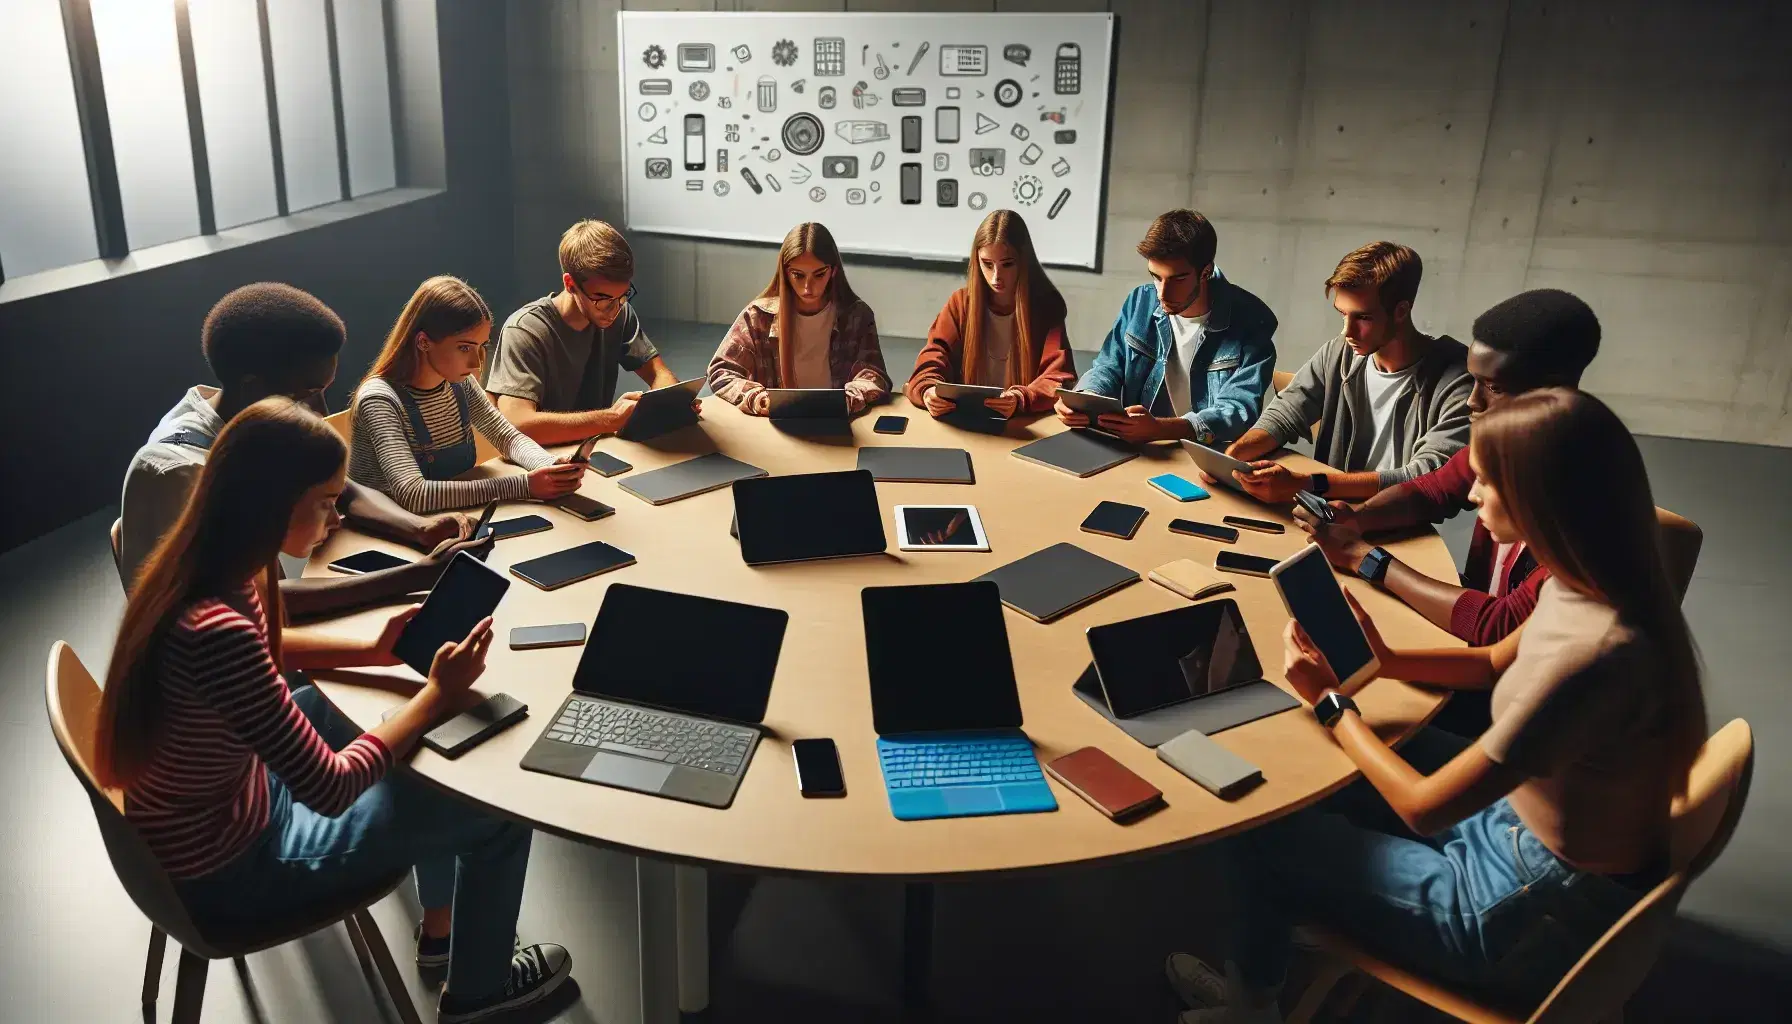 Grupo diverso de estudiantes colaborando alrededor de una mesa con dispositivos electrónicos, en un ambiente de estudio iluminado suavemente.